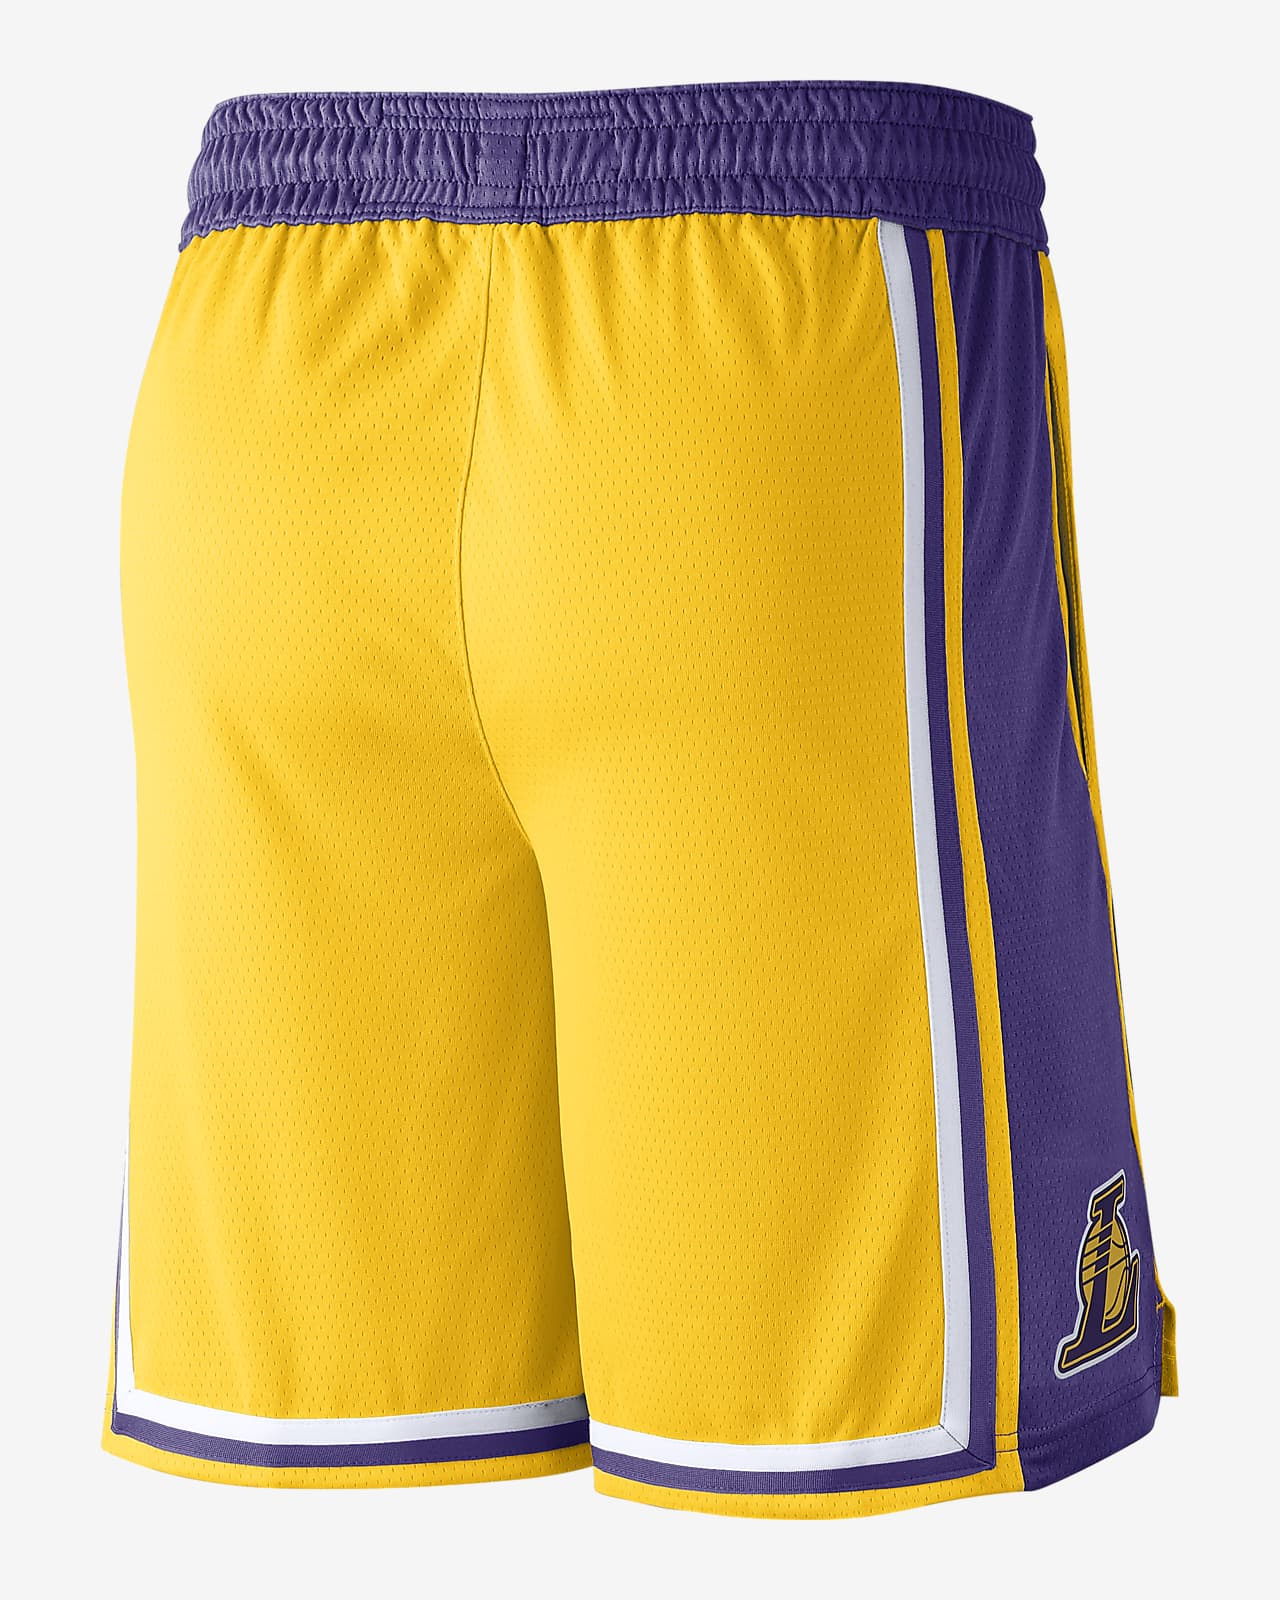 Men's Purple Shorts. Nike CA